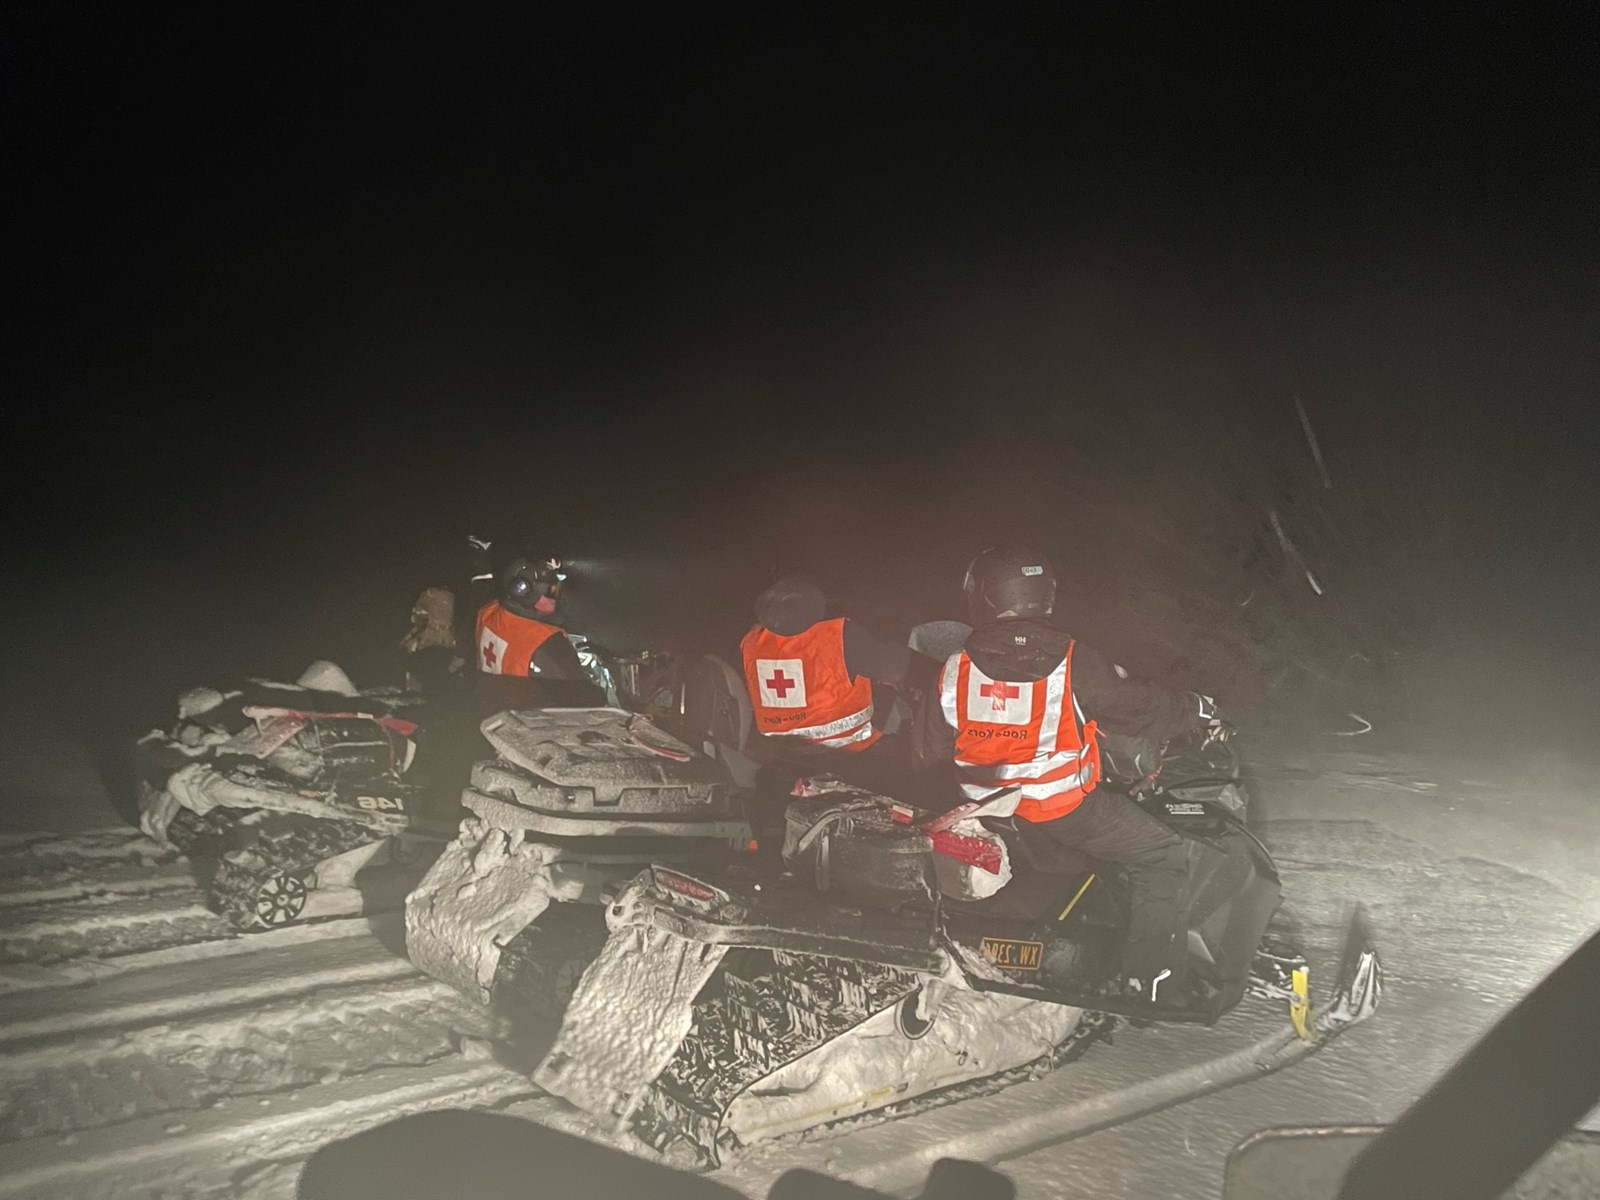 Hjelpekorpsere på snøscooter i fjellet på natten.